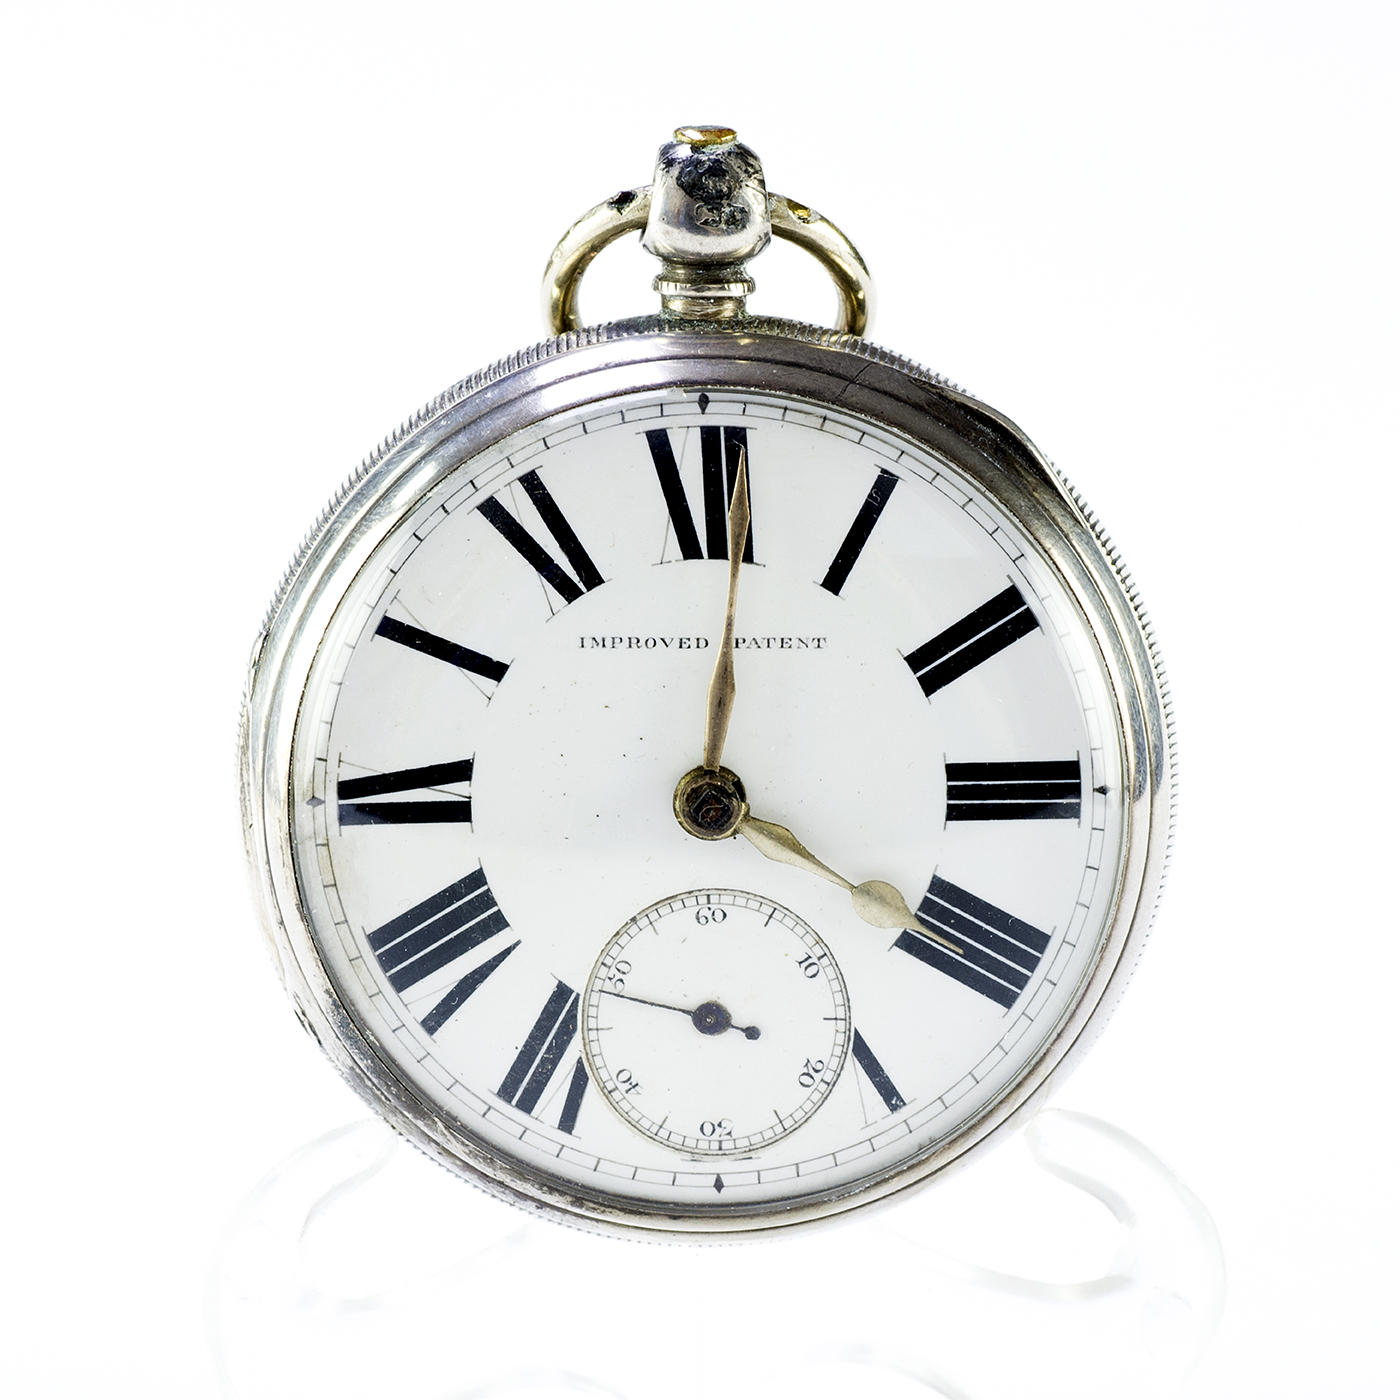 IMPROVED PATENT. Reloj de bolsillo inglés, lepine, Half Fusee (Semicatalino). Chester, 1884.